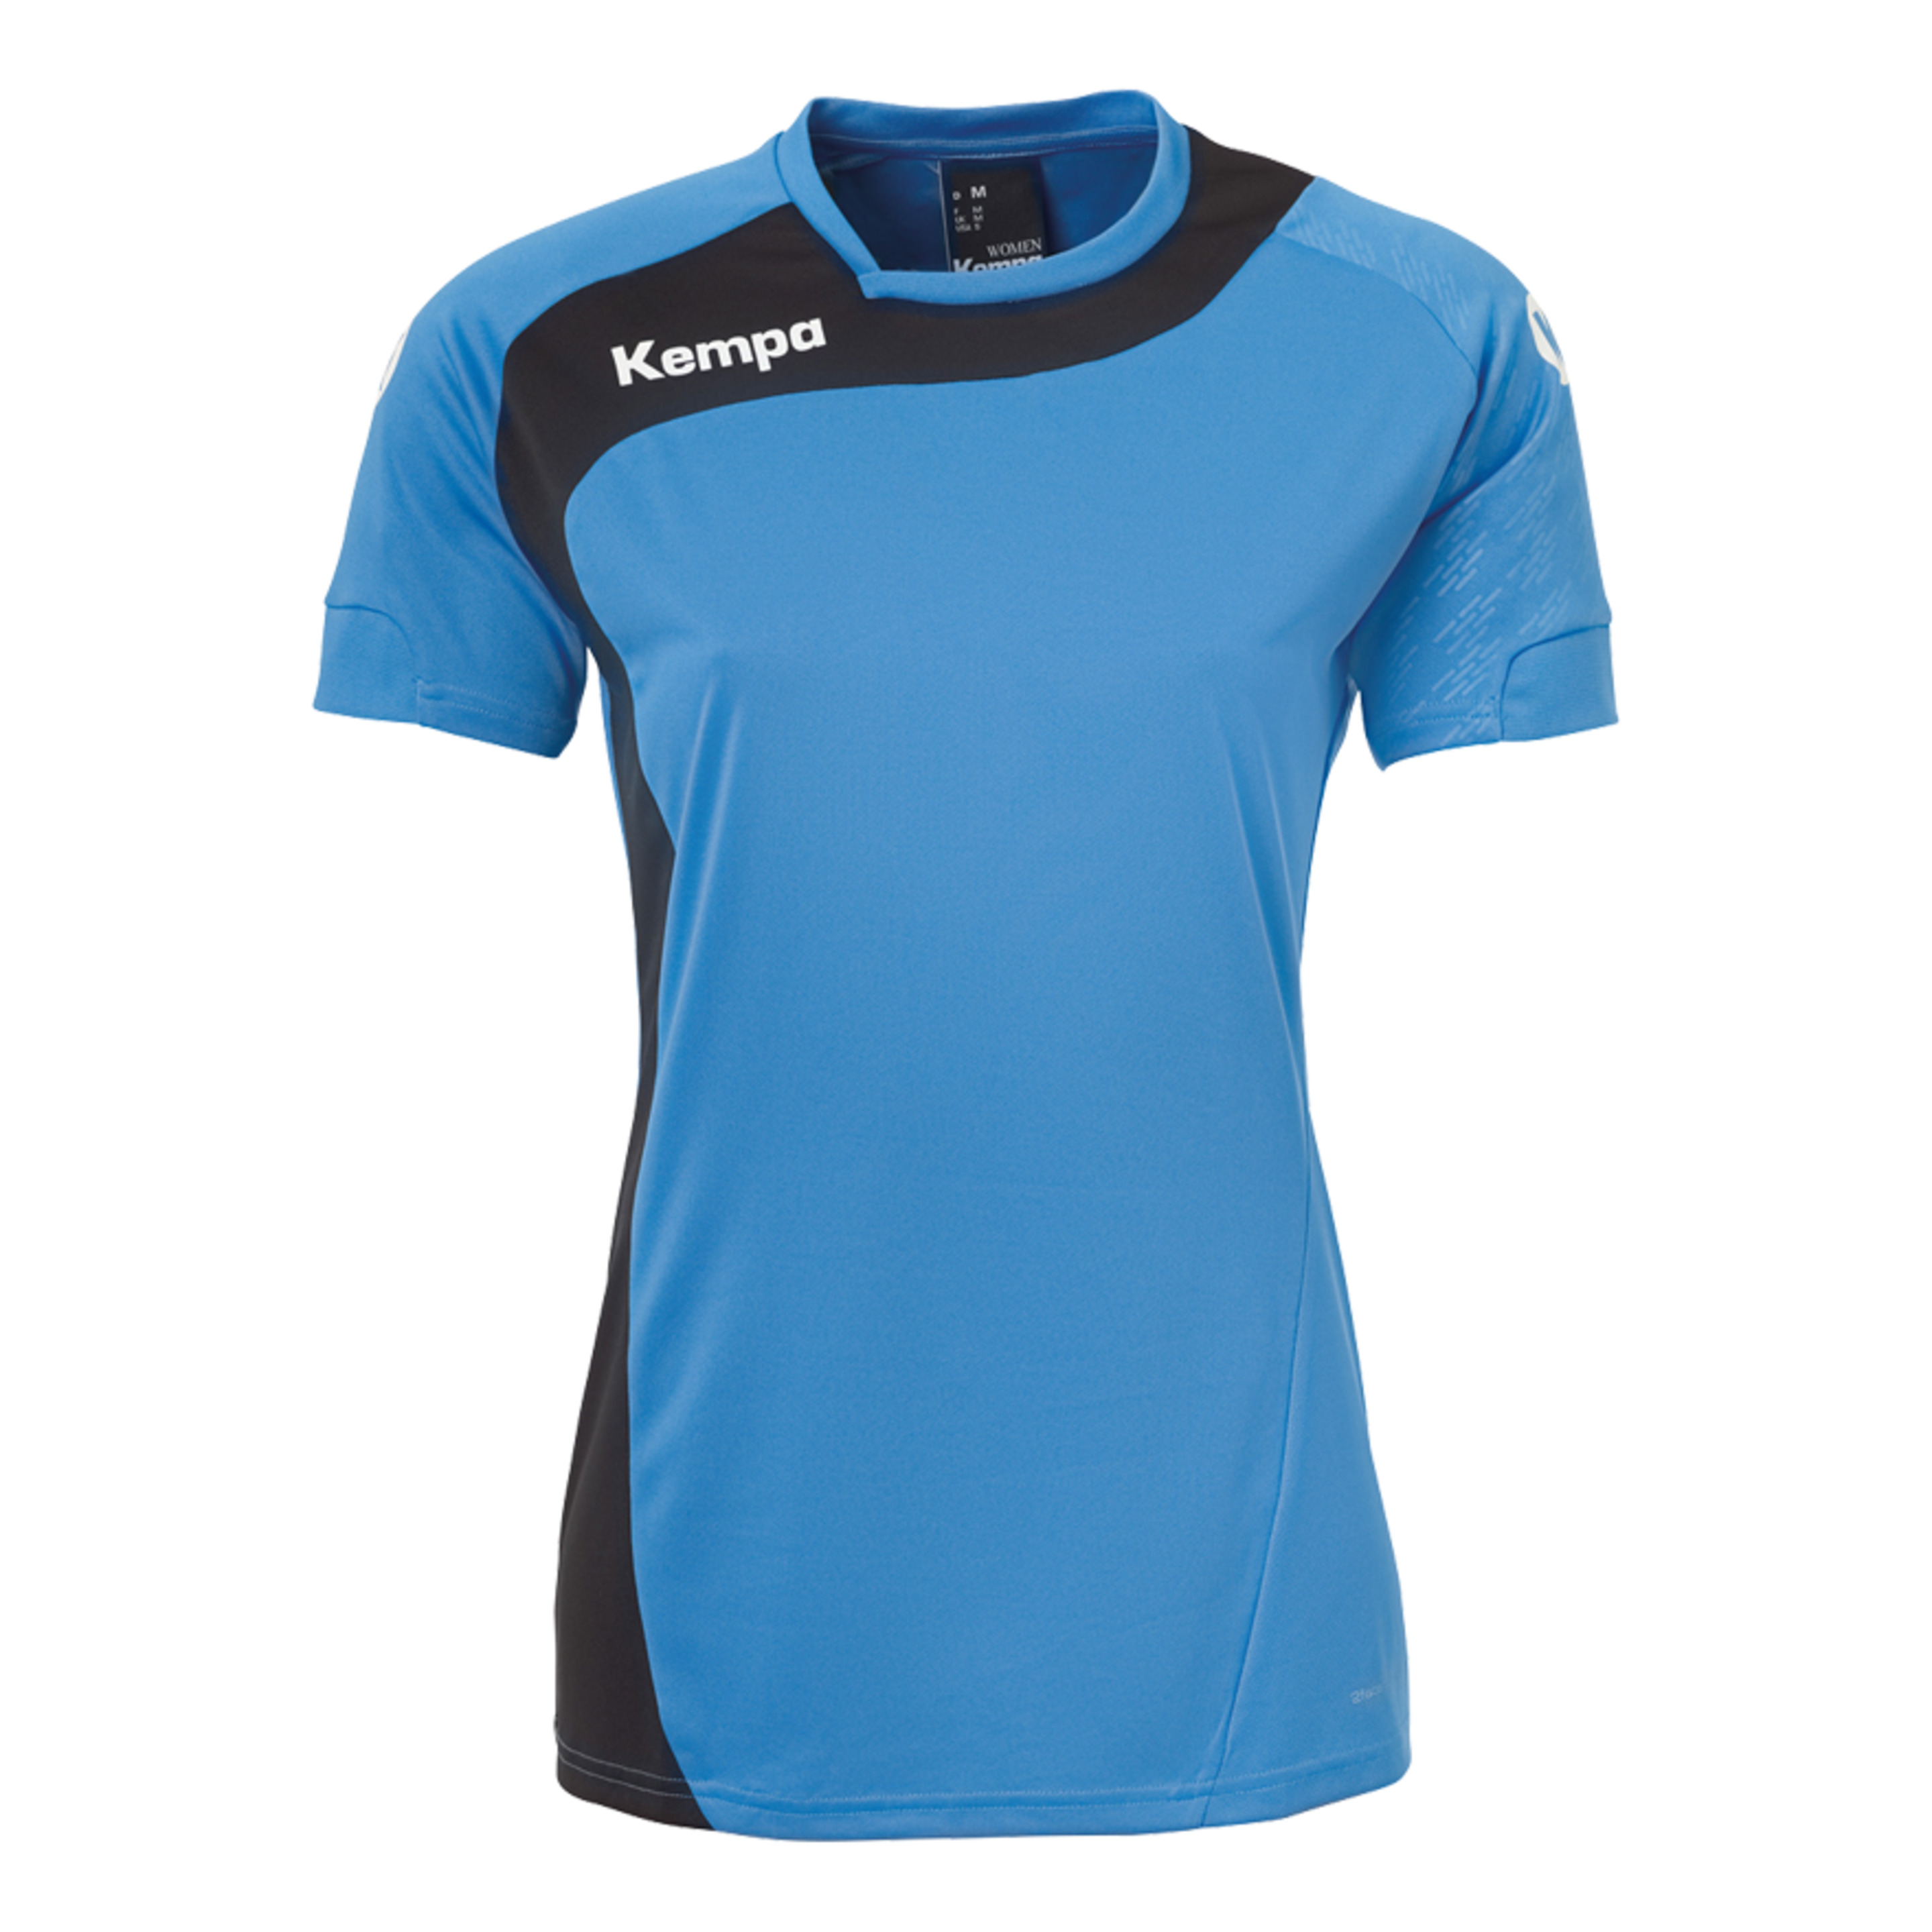 Peak Camiseta De Mujer Kempa Azul/negro Kempa - azul - 